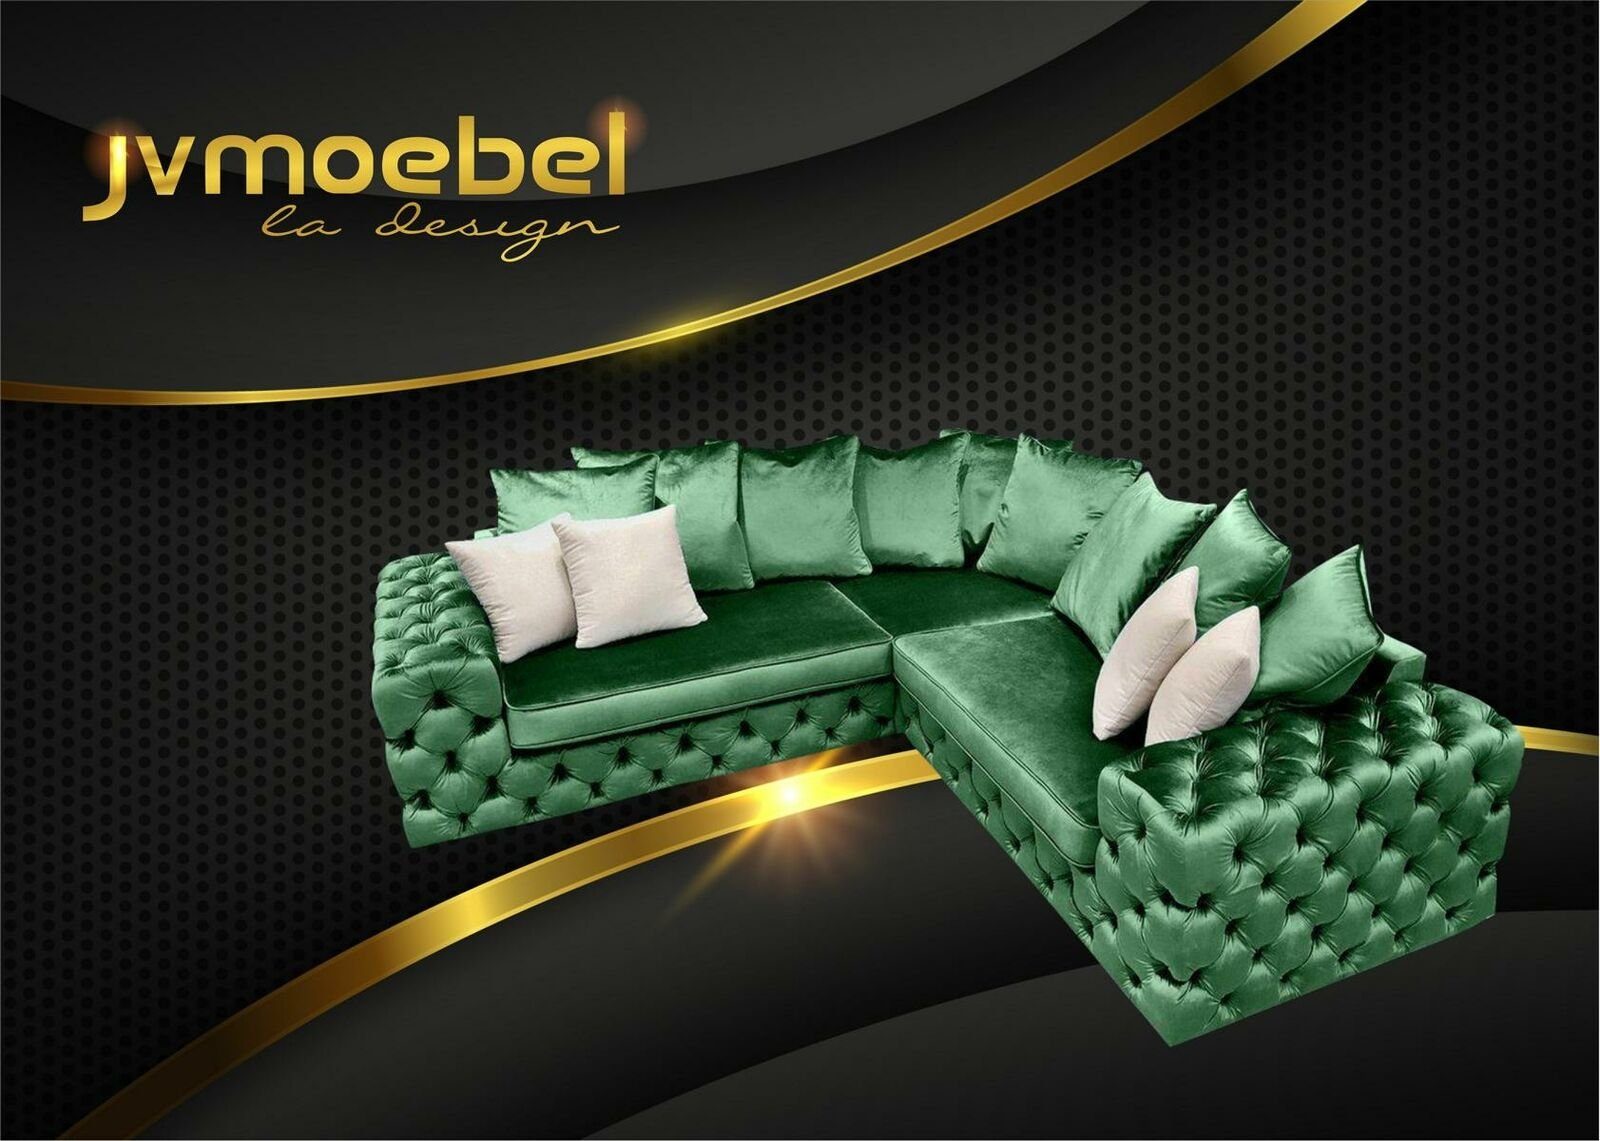 JVmoebel Ecksofa Wohnlandschaft L-Form Ecksofa Couch Design Polster Textil Grün